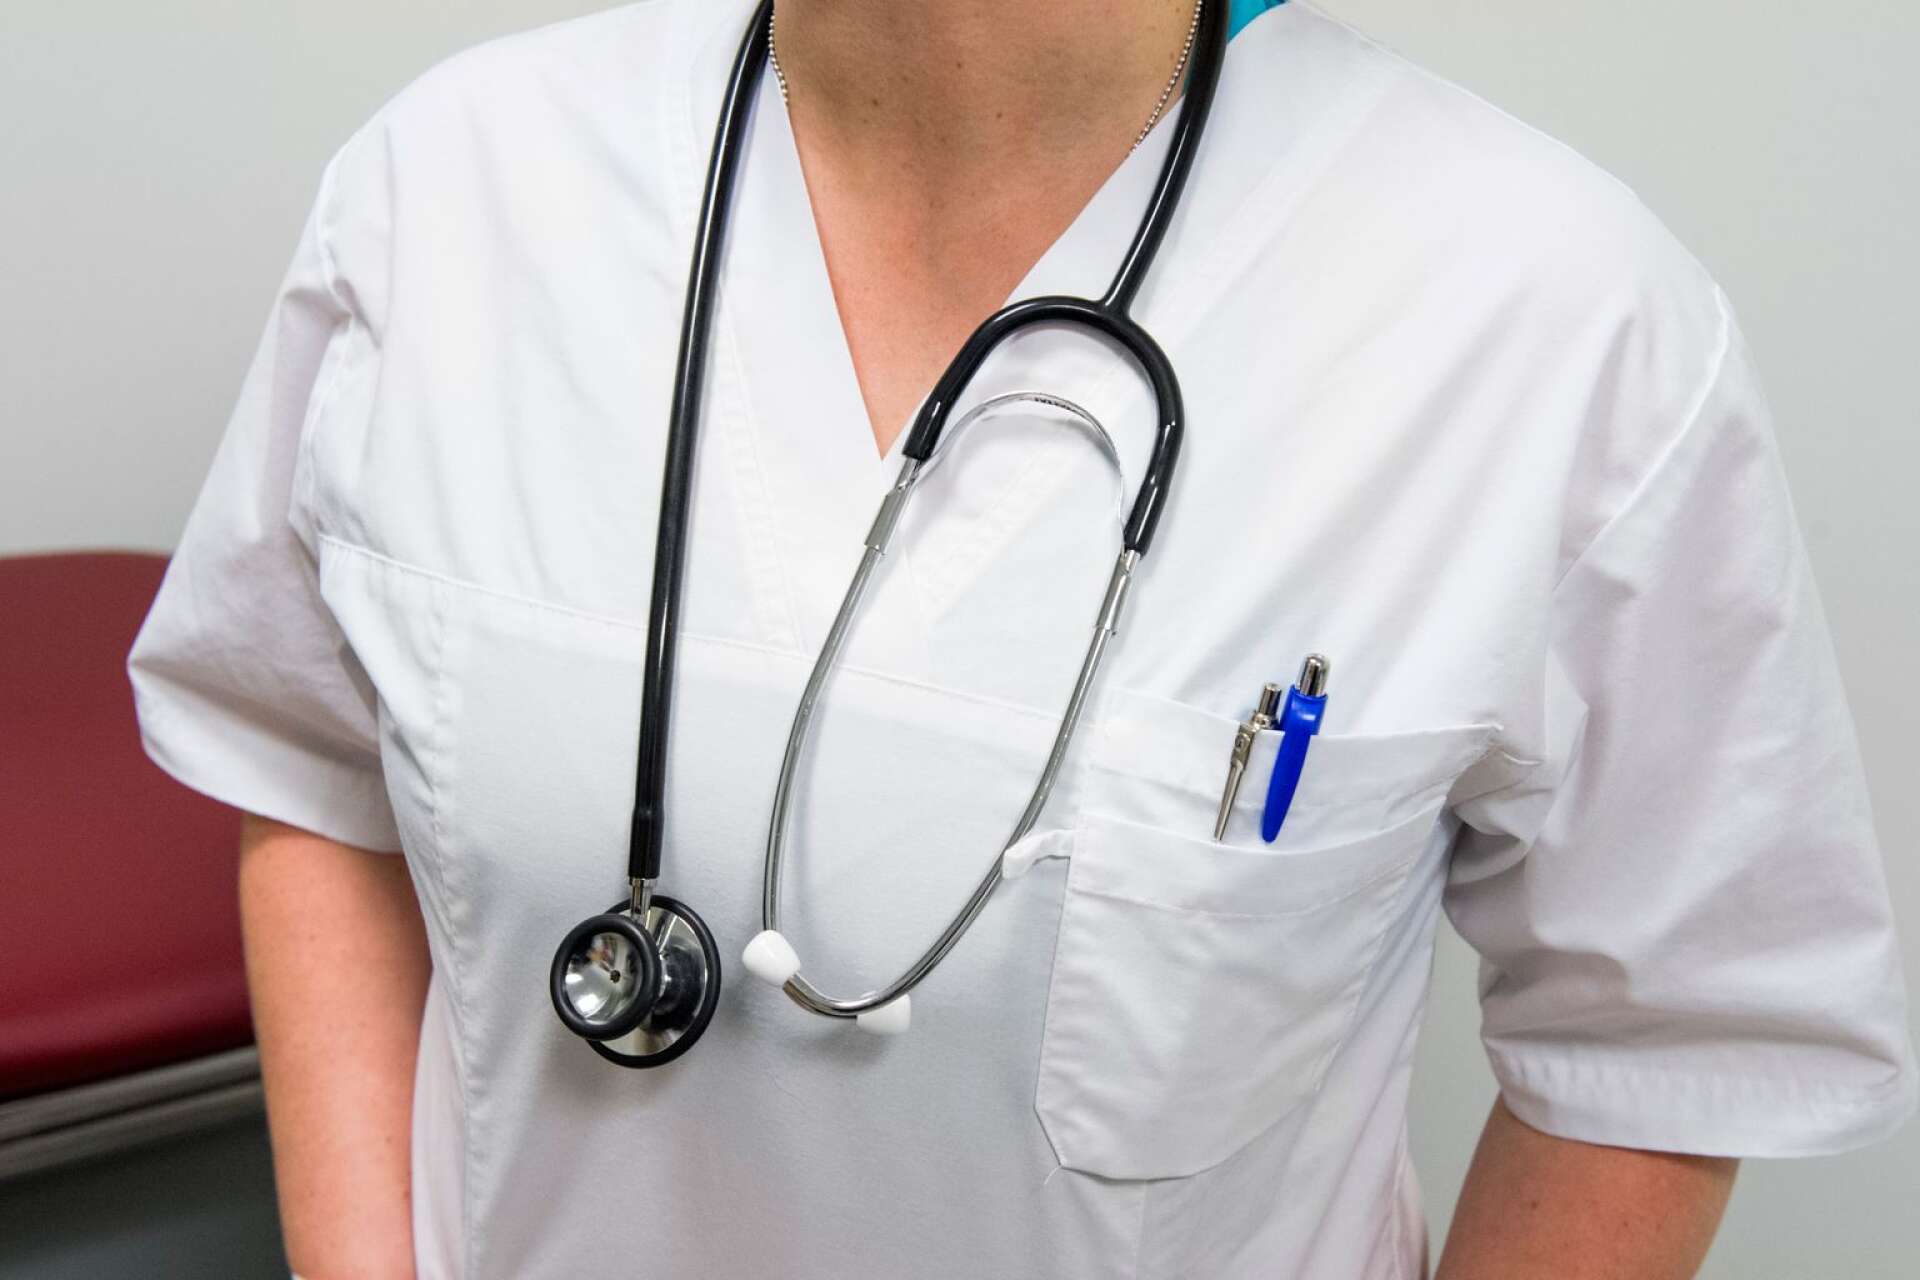 Insändarskribenten som är sjuksköterska på Centralsjukhuset i Karlstad upplever att patientsäkerheten är hotad ”precis varenda dag”.